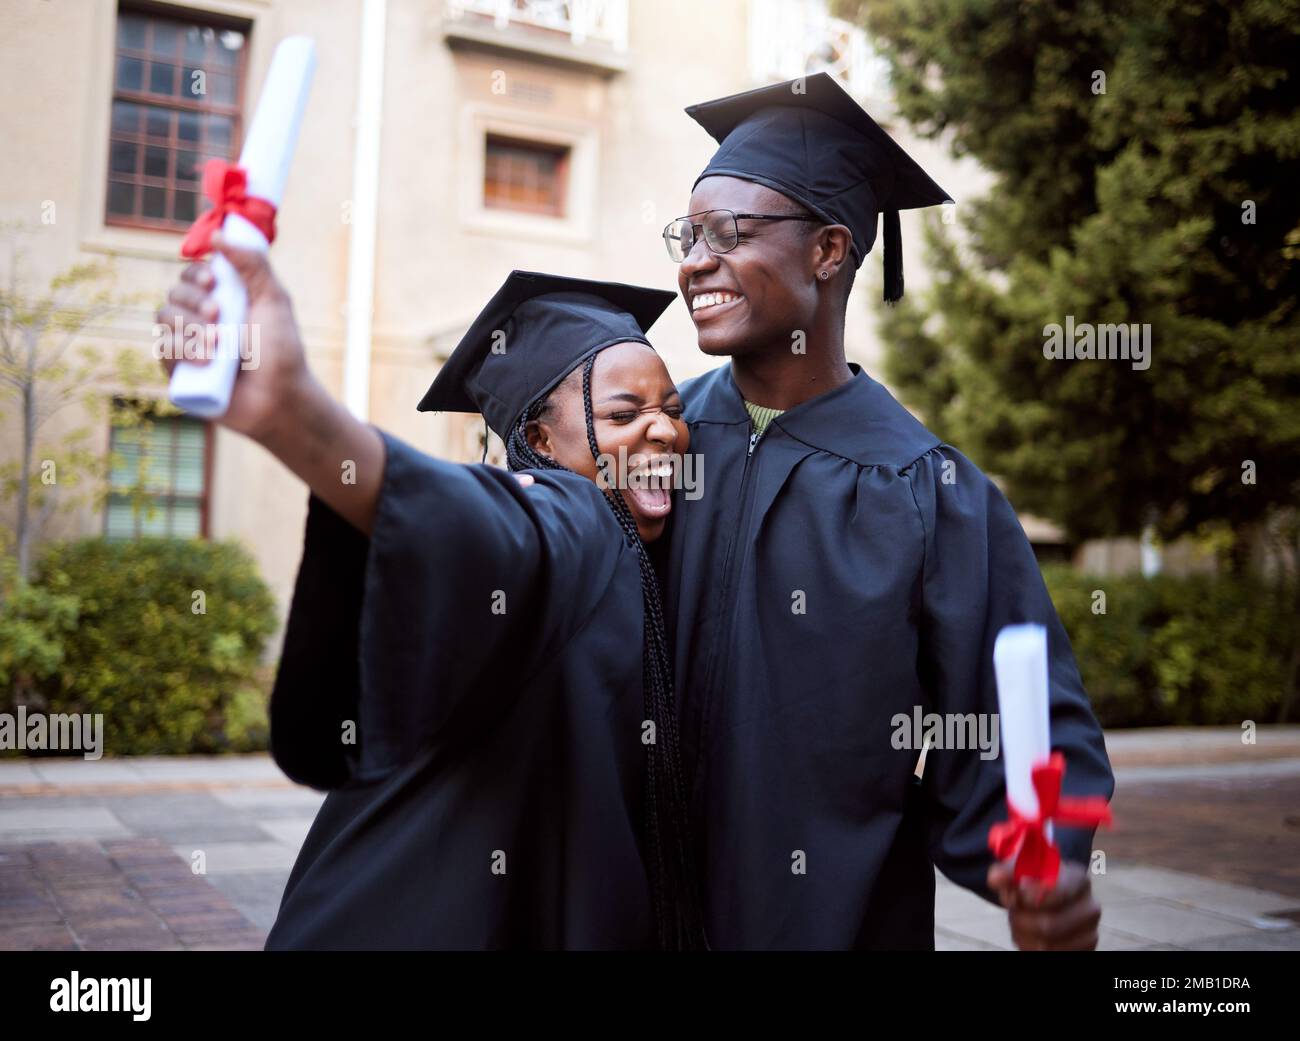 Étudiants noirs, hug et célébration pour la remise des diplômes, l'éducation et la réussite à l'université, au campus et à la réussite. Femme, homme ou afro-américain Banque D'Images